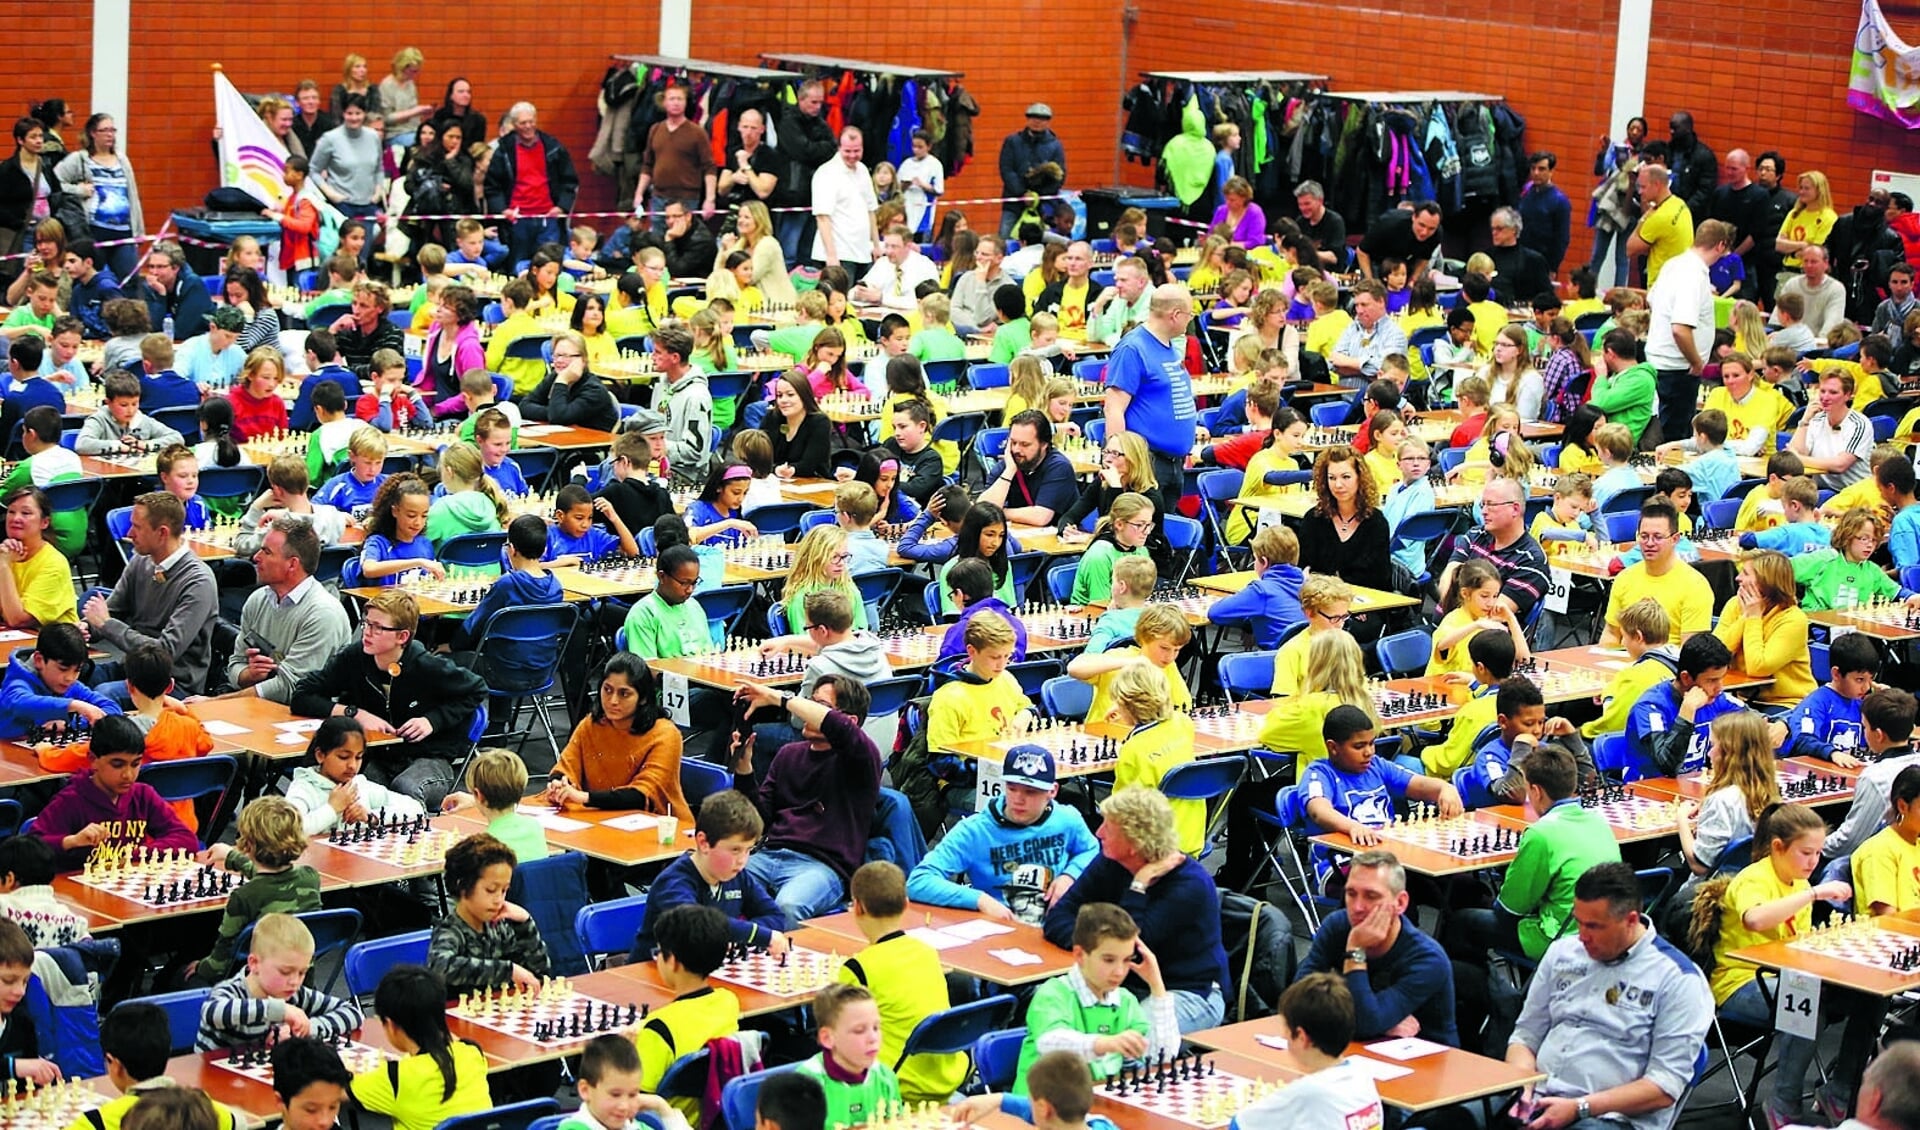 Het Almeerse schoolschaaktoernooi is één van de grootste in ons land, maar kan onder de huidige omstandigheden niet op de vertrouwde manier worden georganiseerd. (Archieffoto: Fred Rotgans)